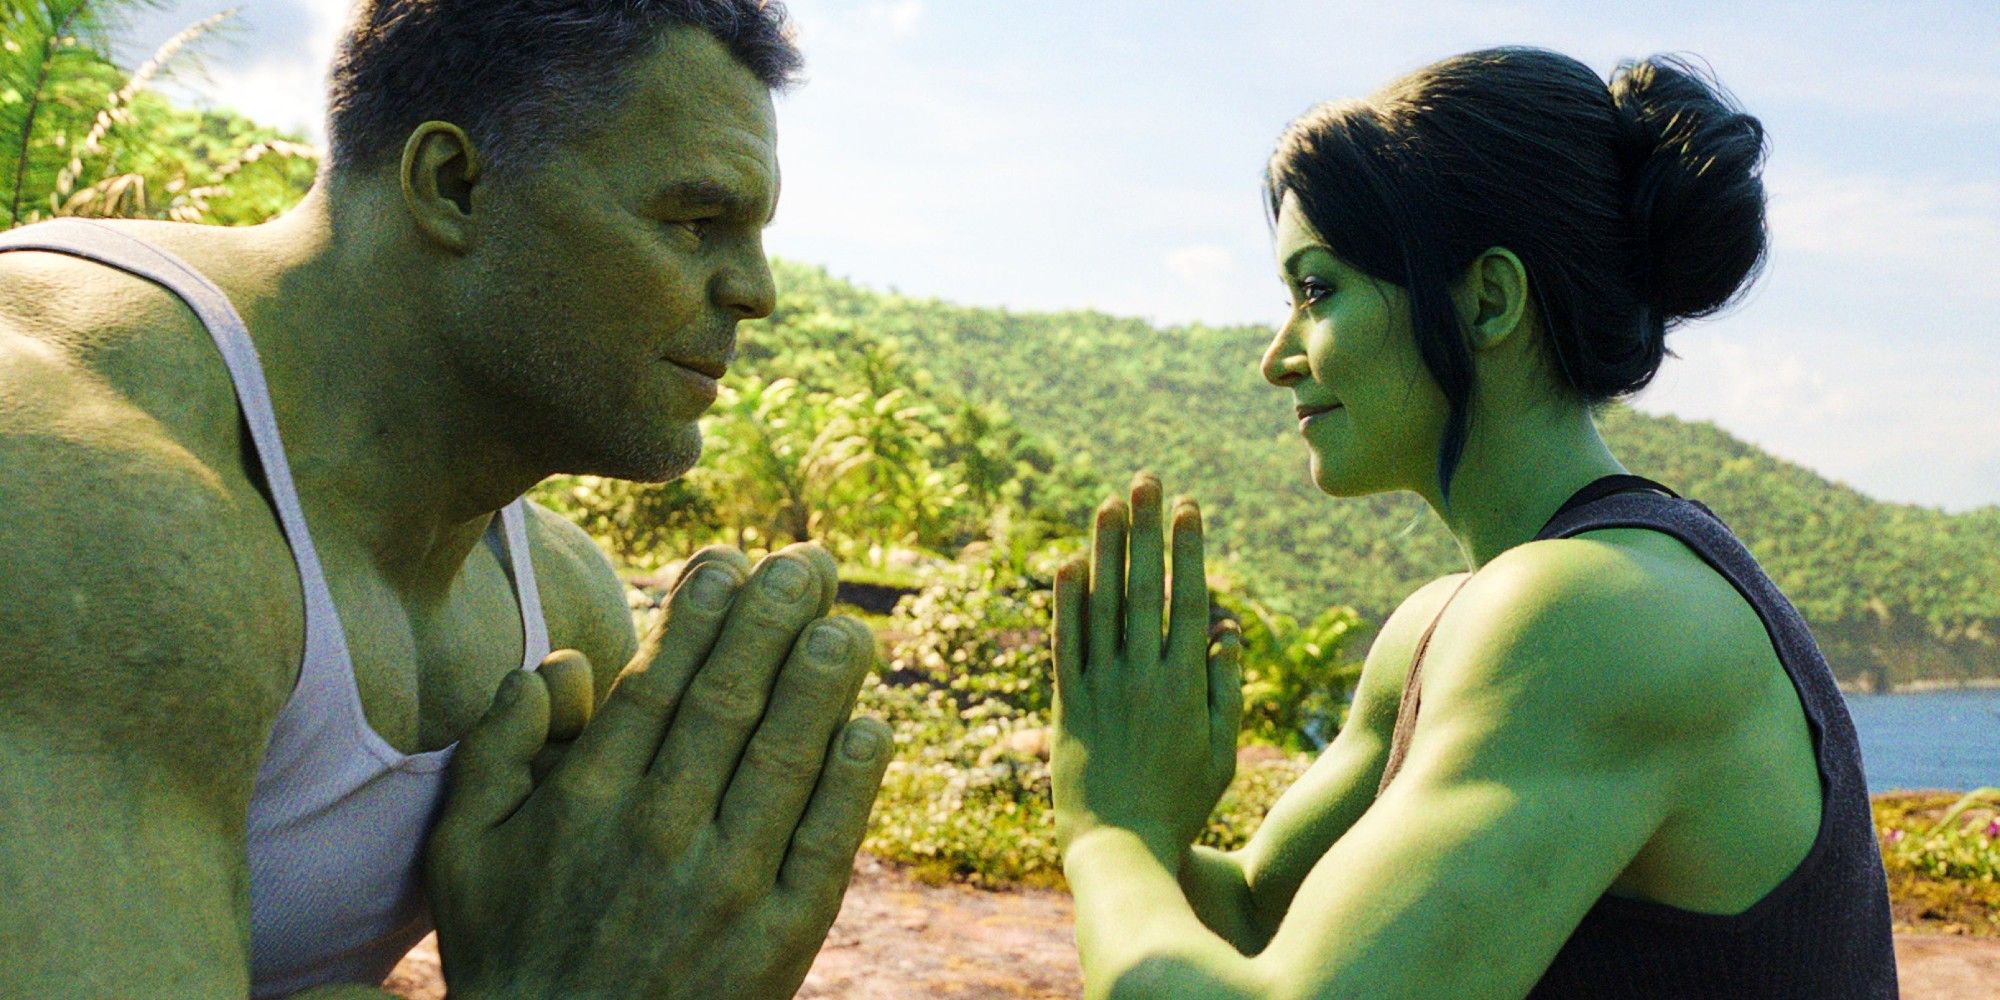 Mark Ruffalo as Hulk and Tatiana Maslany as She Hulk facing each other